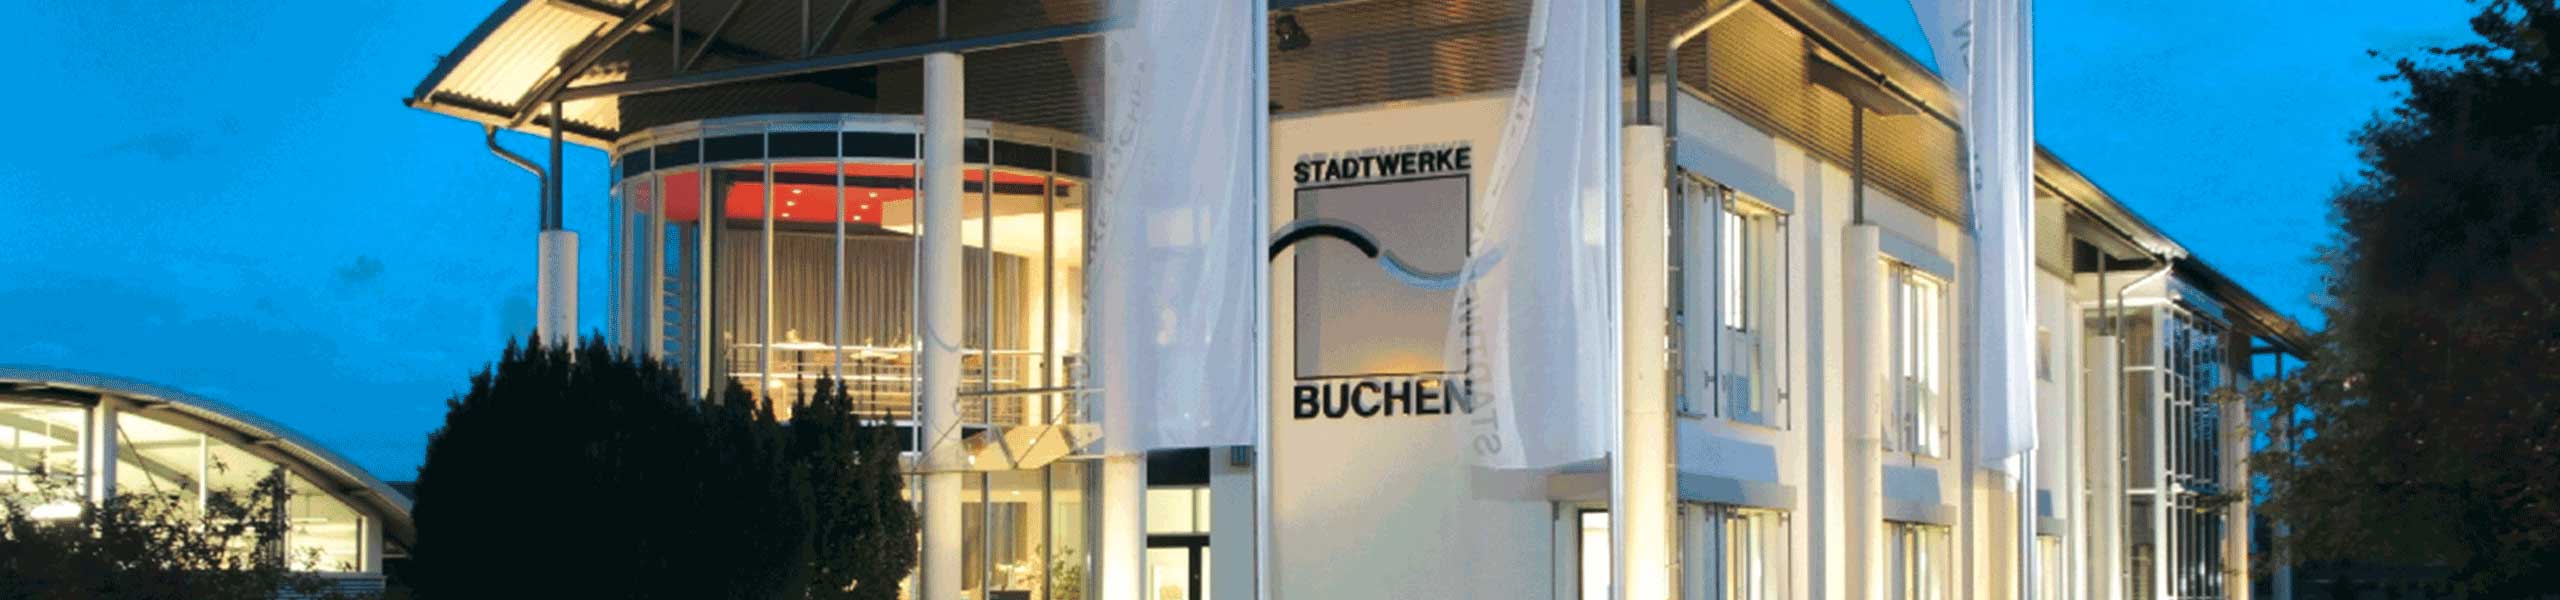 Stadtwerke Buchen GmbH & Co KG - Ihr Versorger vor Ort - Grundzuständiger Messstellenbetreiber Strom